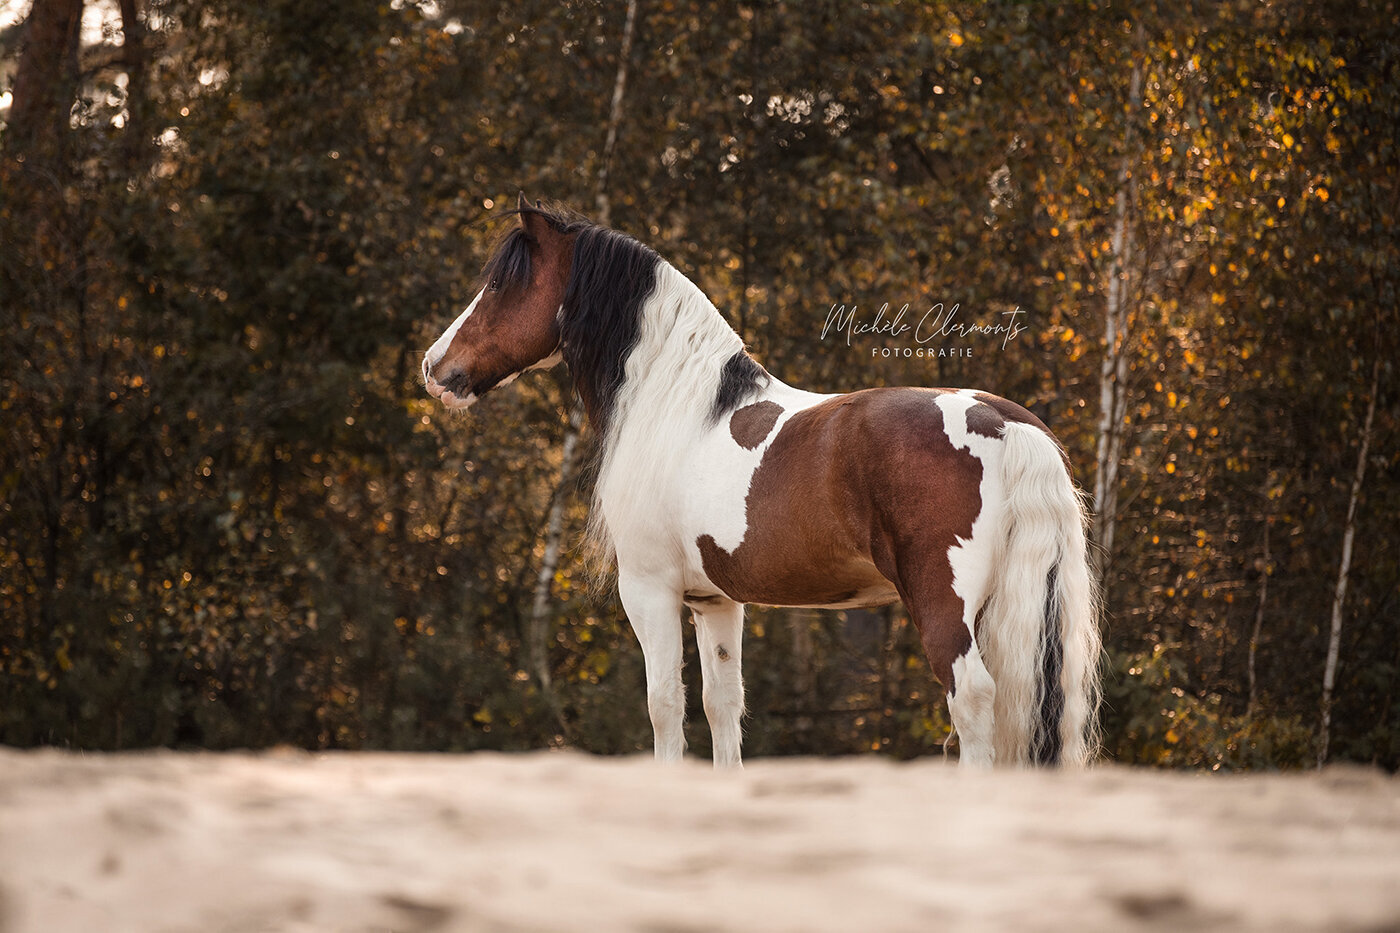 DSC_9632-1-paardenfotografie-michèle clermonts fotografie-low